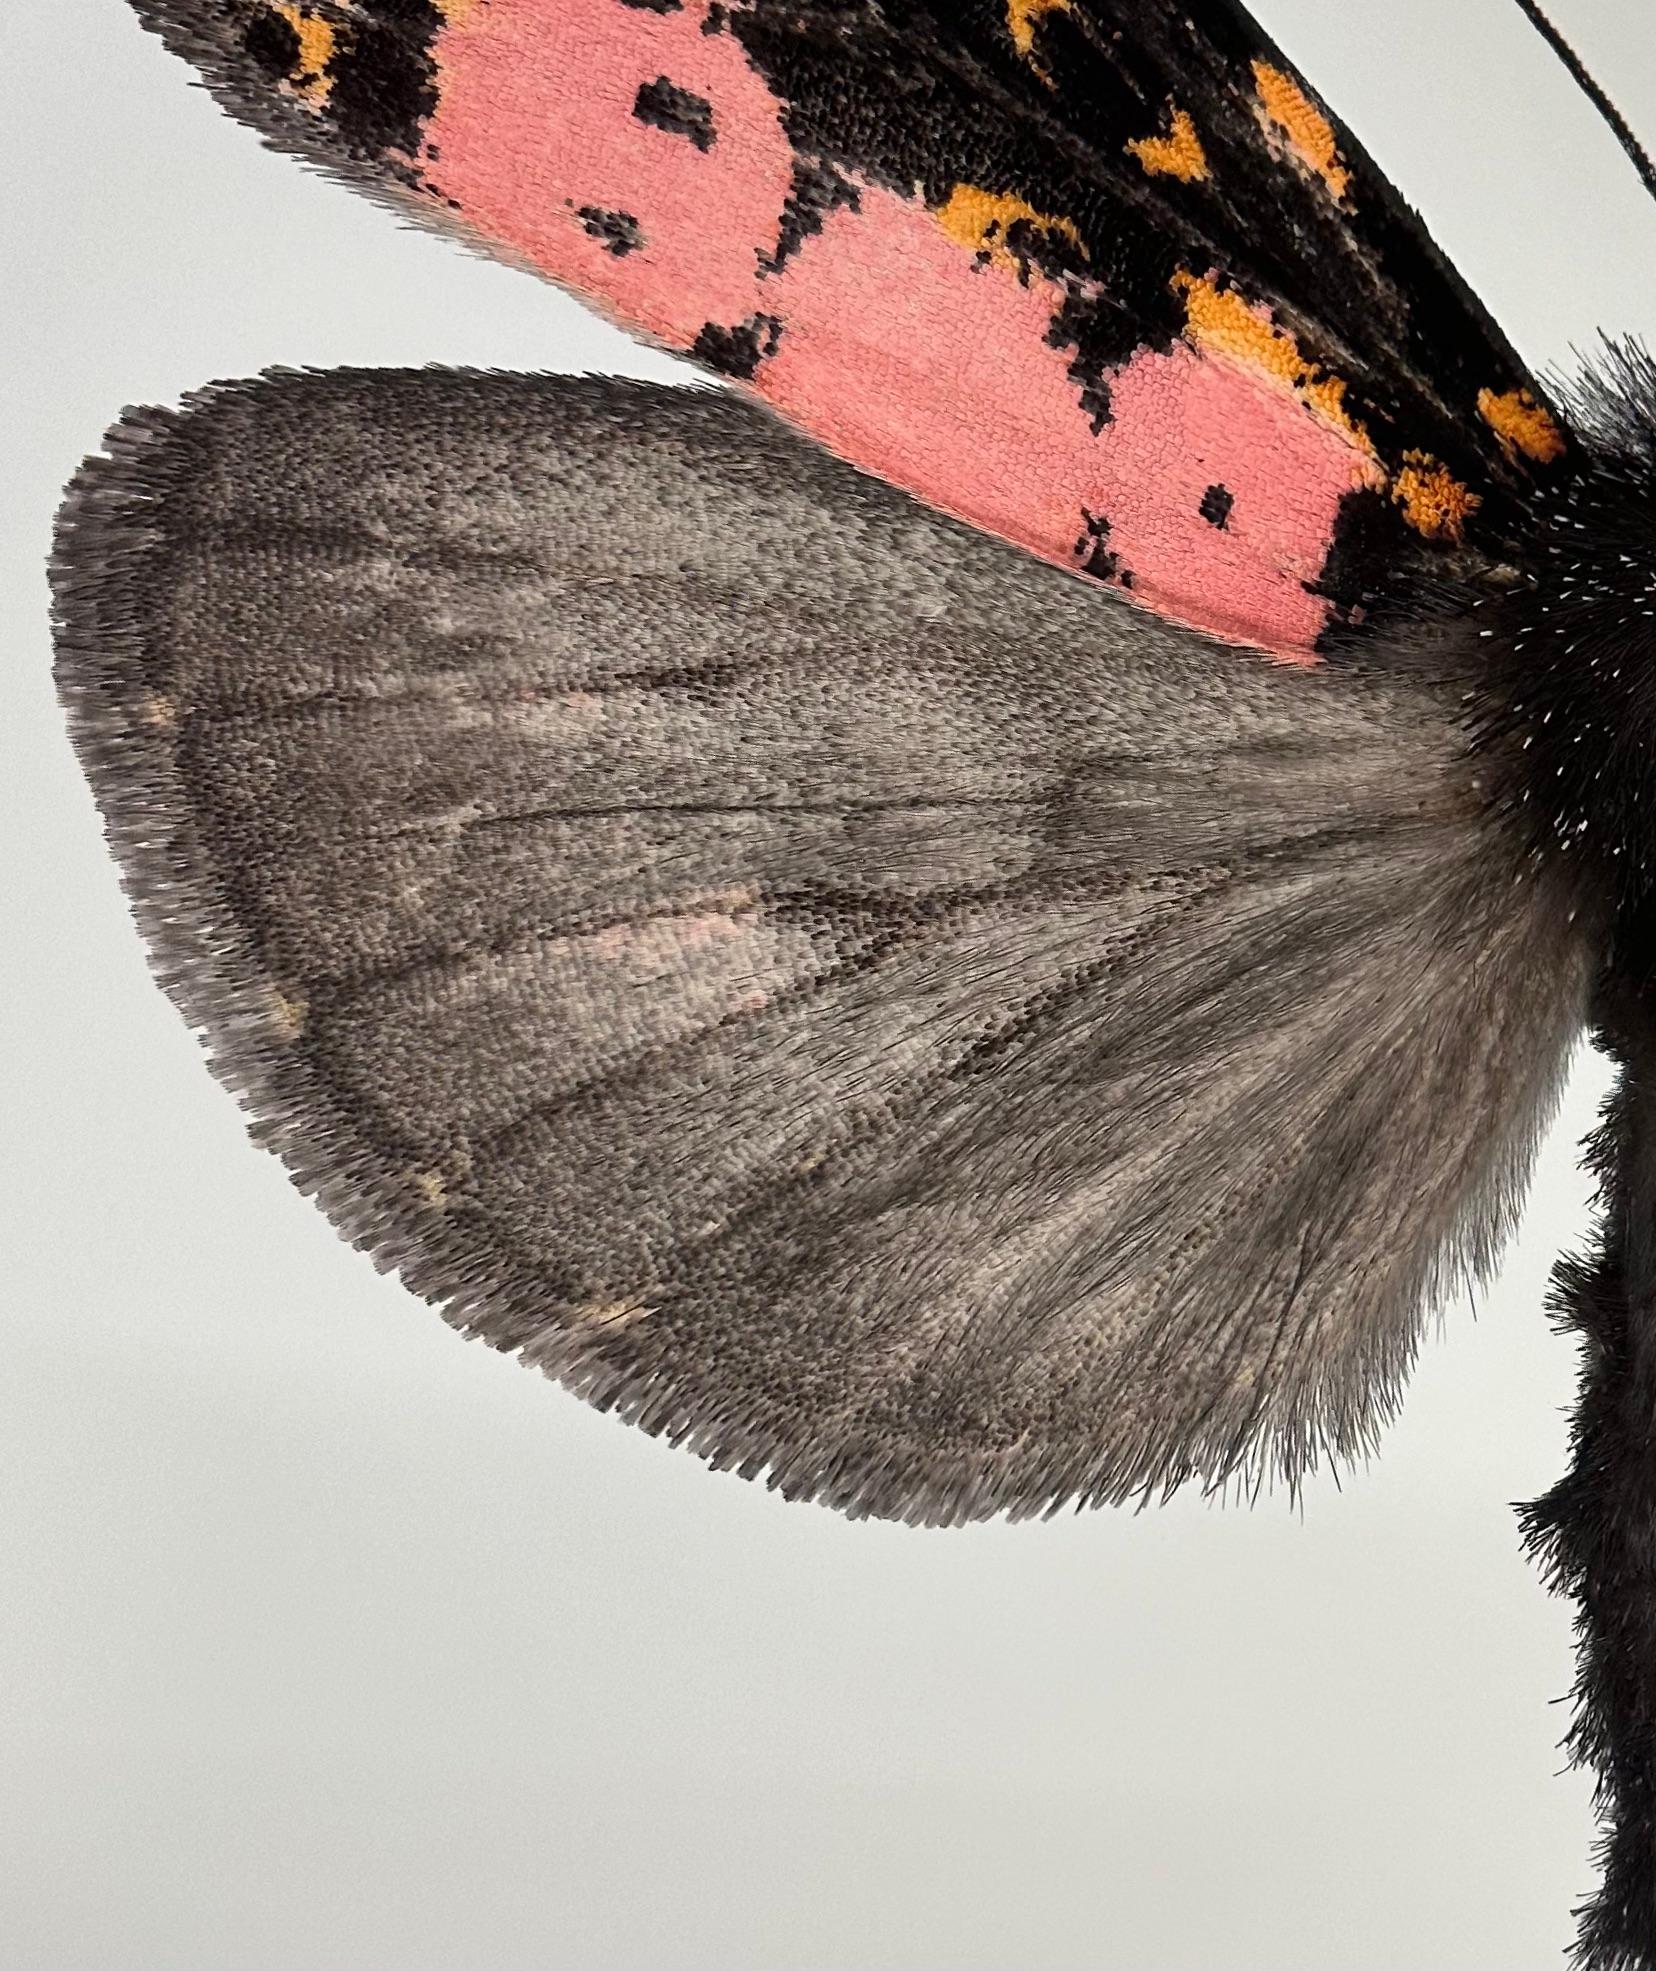 Xanthopastis Regnatrix, rose, orange, Brown, blanc, Insecte nocturne de la Nature - Photograph de Joseph Scheer